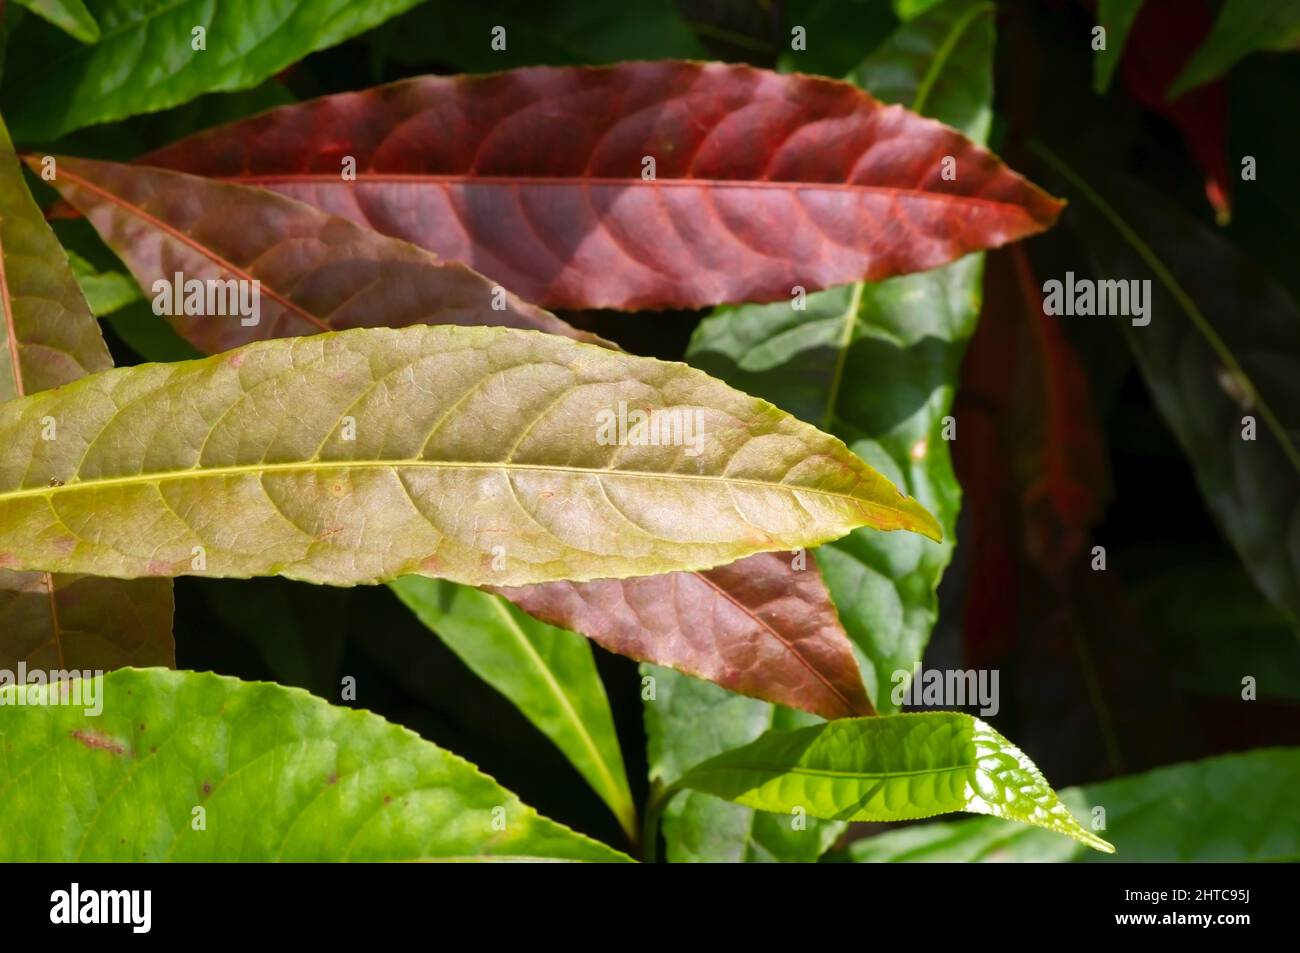 Young Genitri or Jenitri leaves (Elaeocarpus sphaericus Schum), in shallow focus Stock Photo